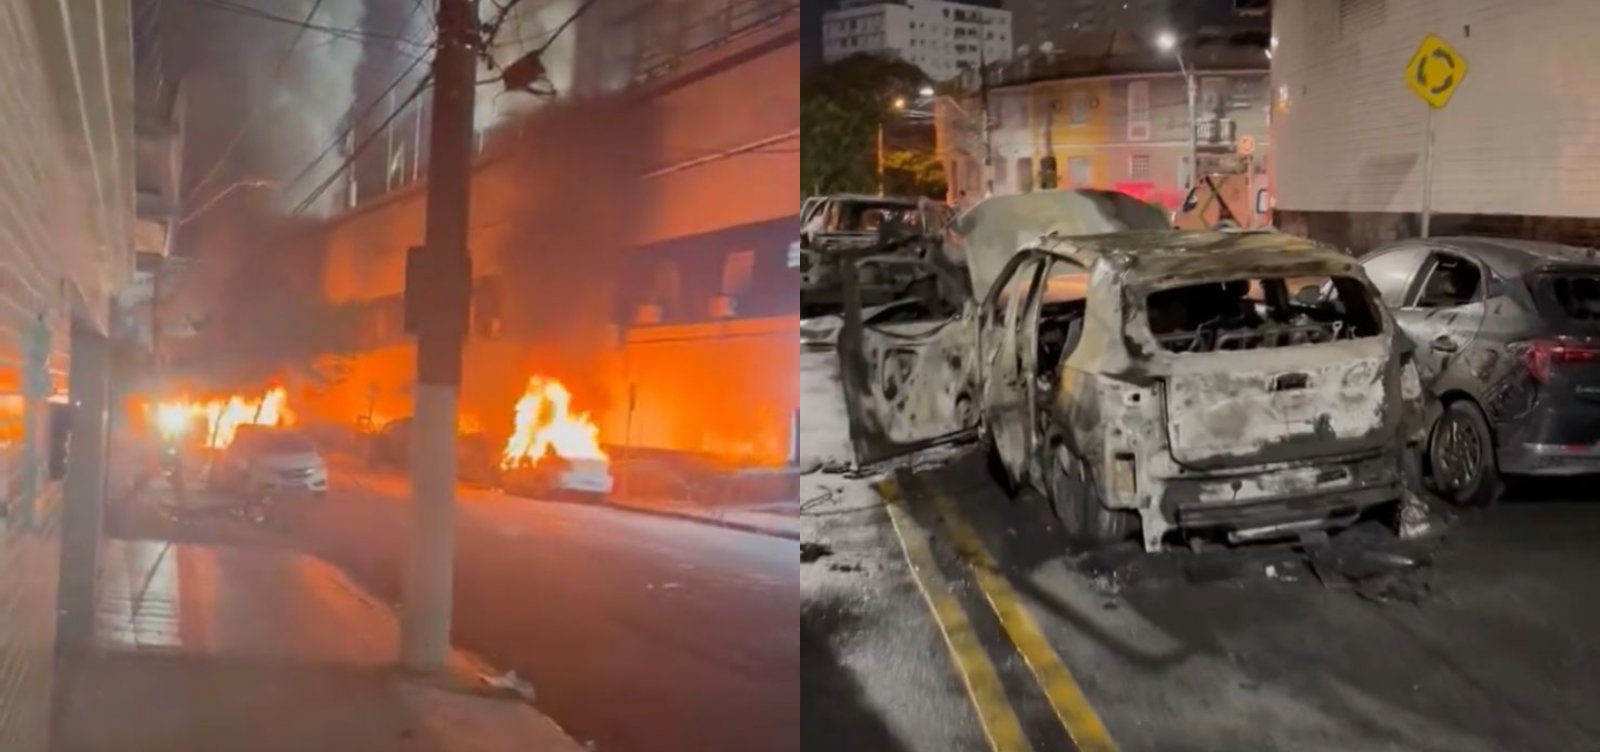 Torcida do Santos incendeia automóveis e 11 pessoas ficam feridas após rebaixamento